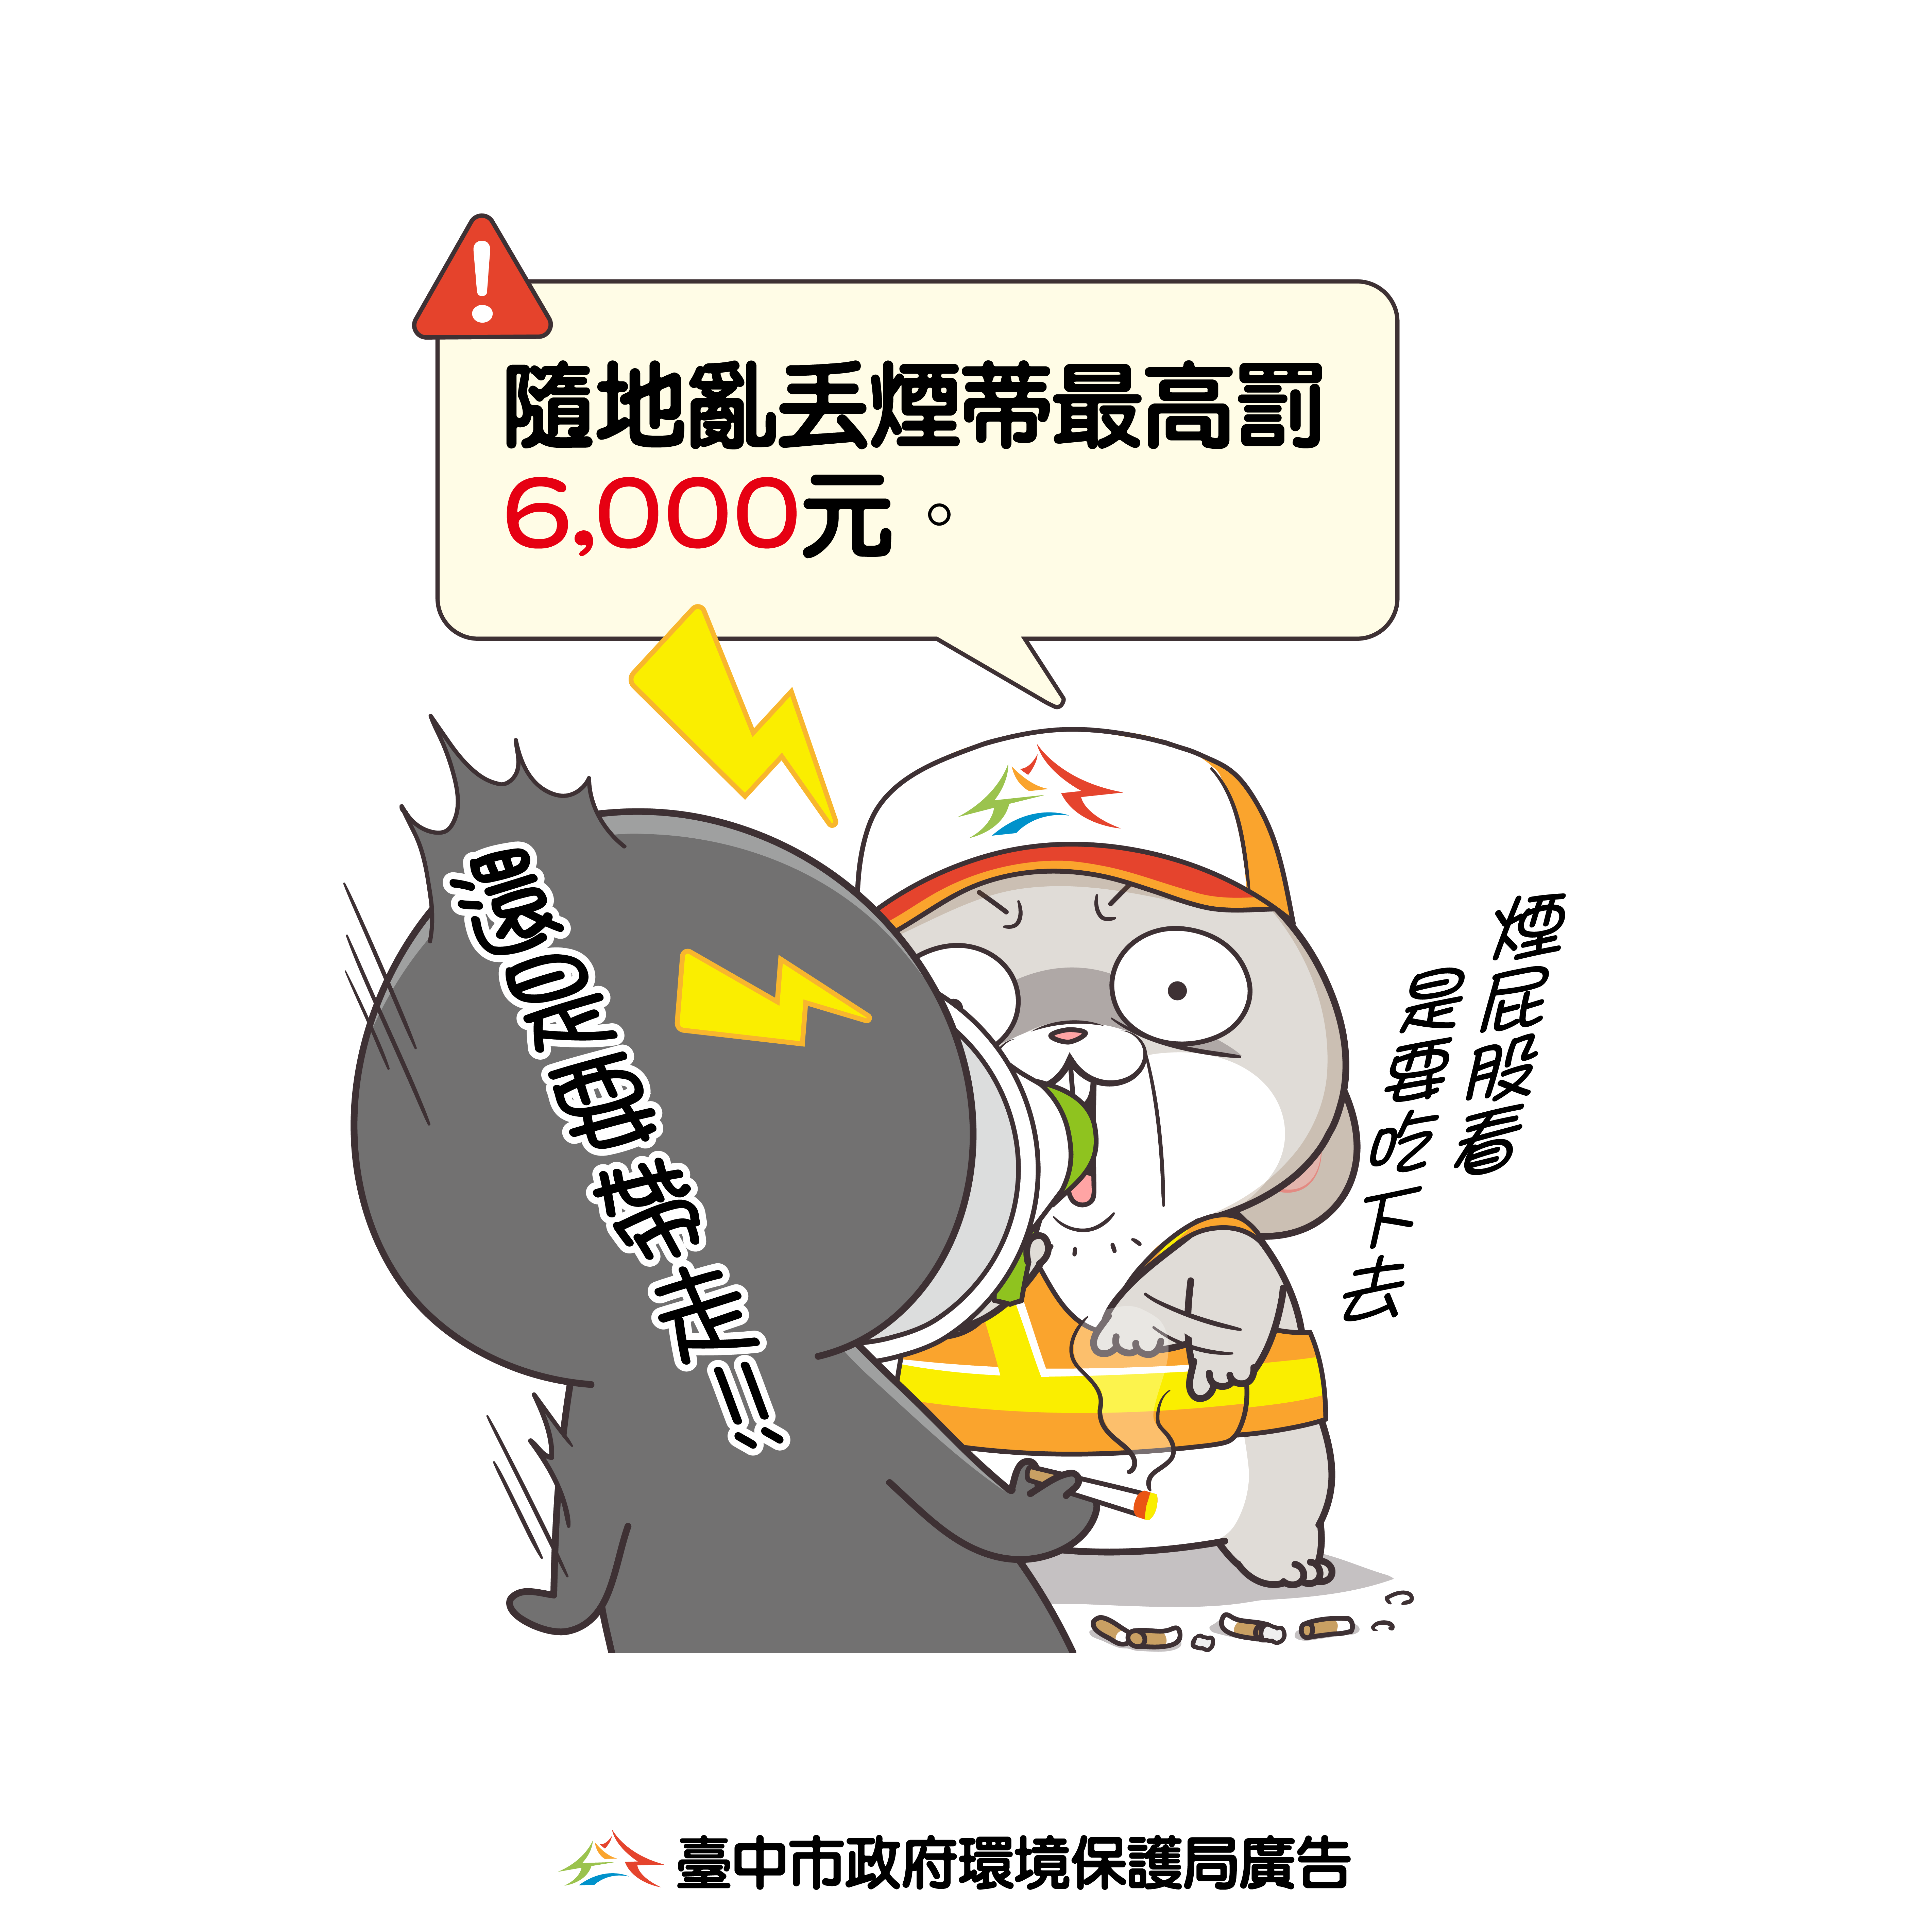 臺中市政府環境保護局廣告-亂丟煙蒂